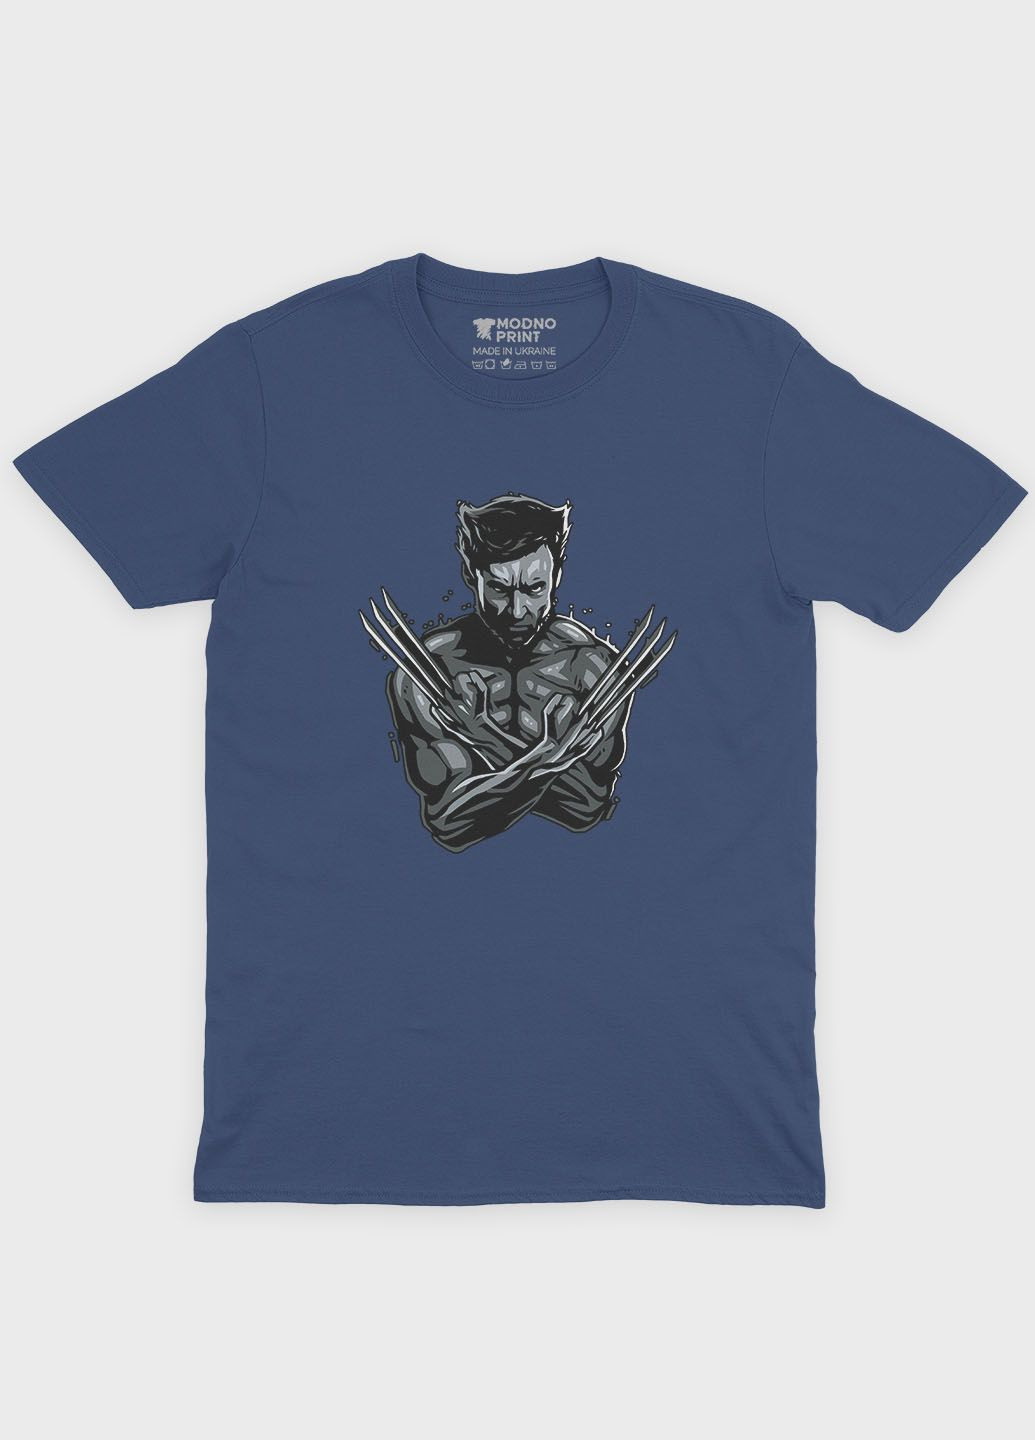 Темно-синяя летняя мужская футболка с принтом супергероя - росомаха (ts001-1-nav-006-021-005-f) Modno